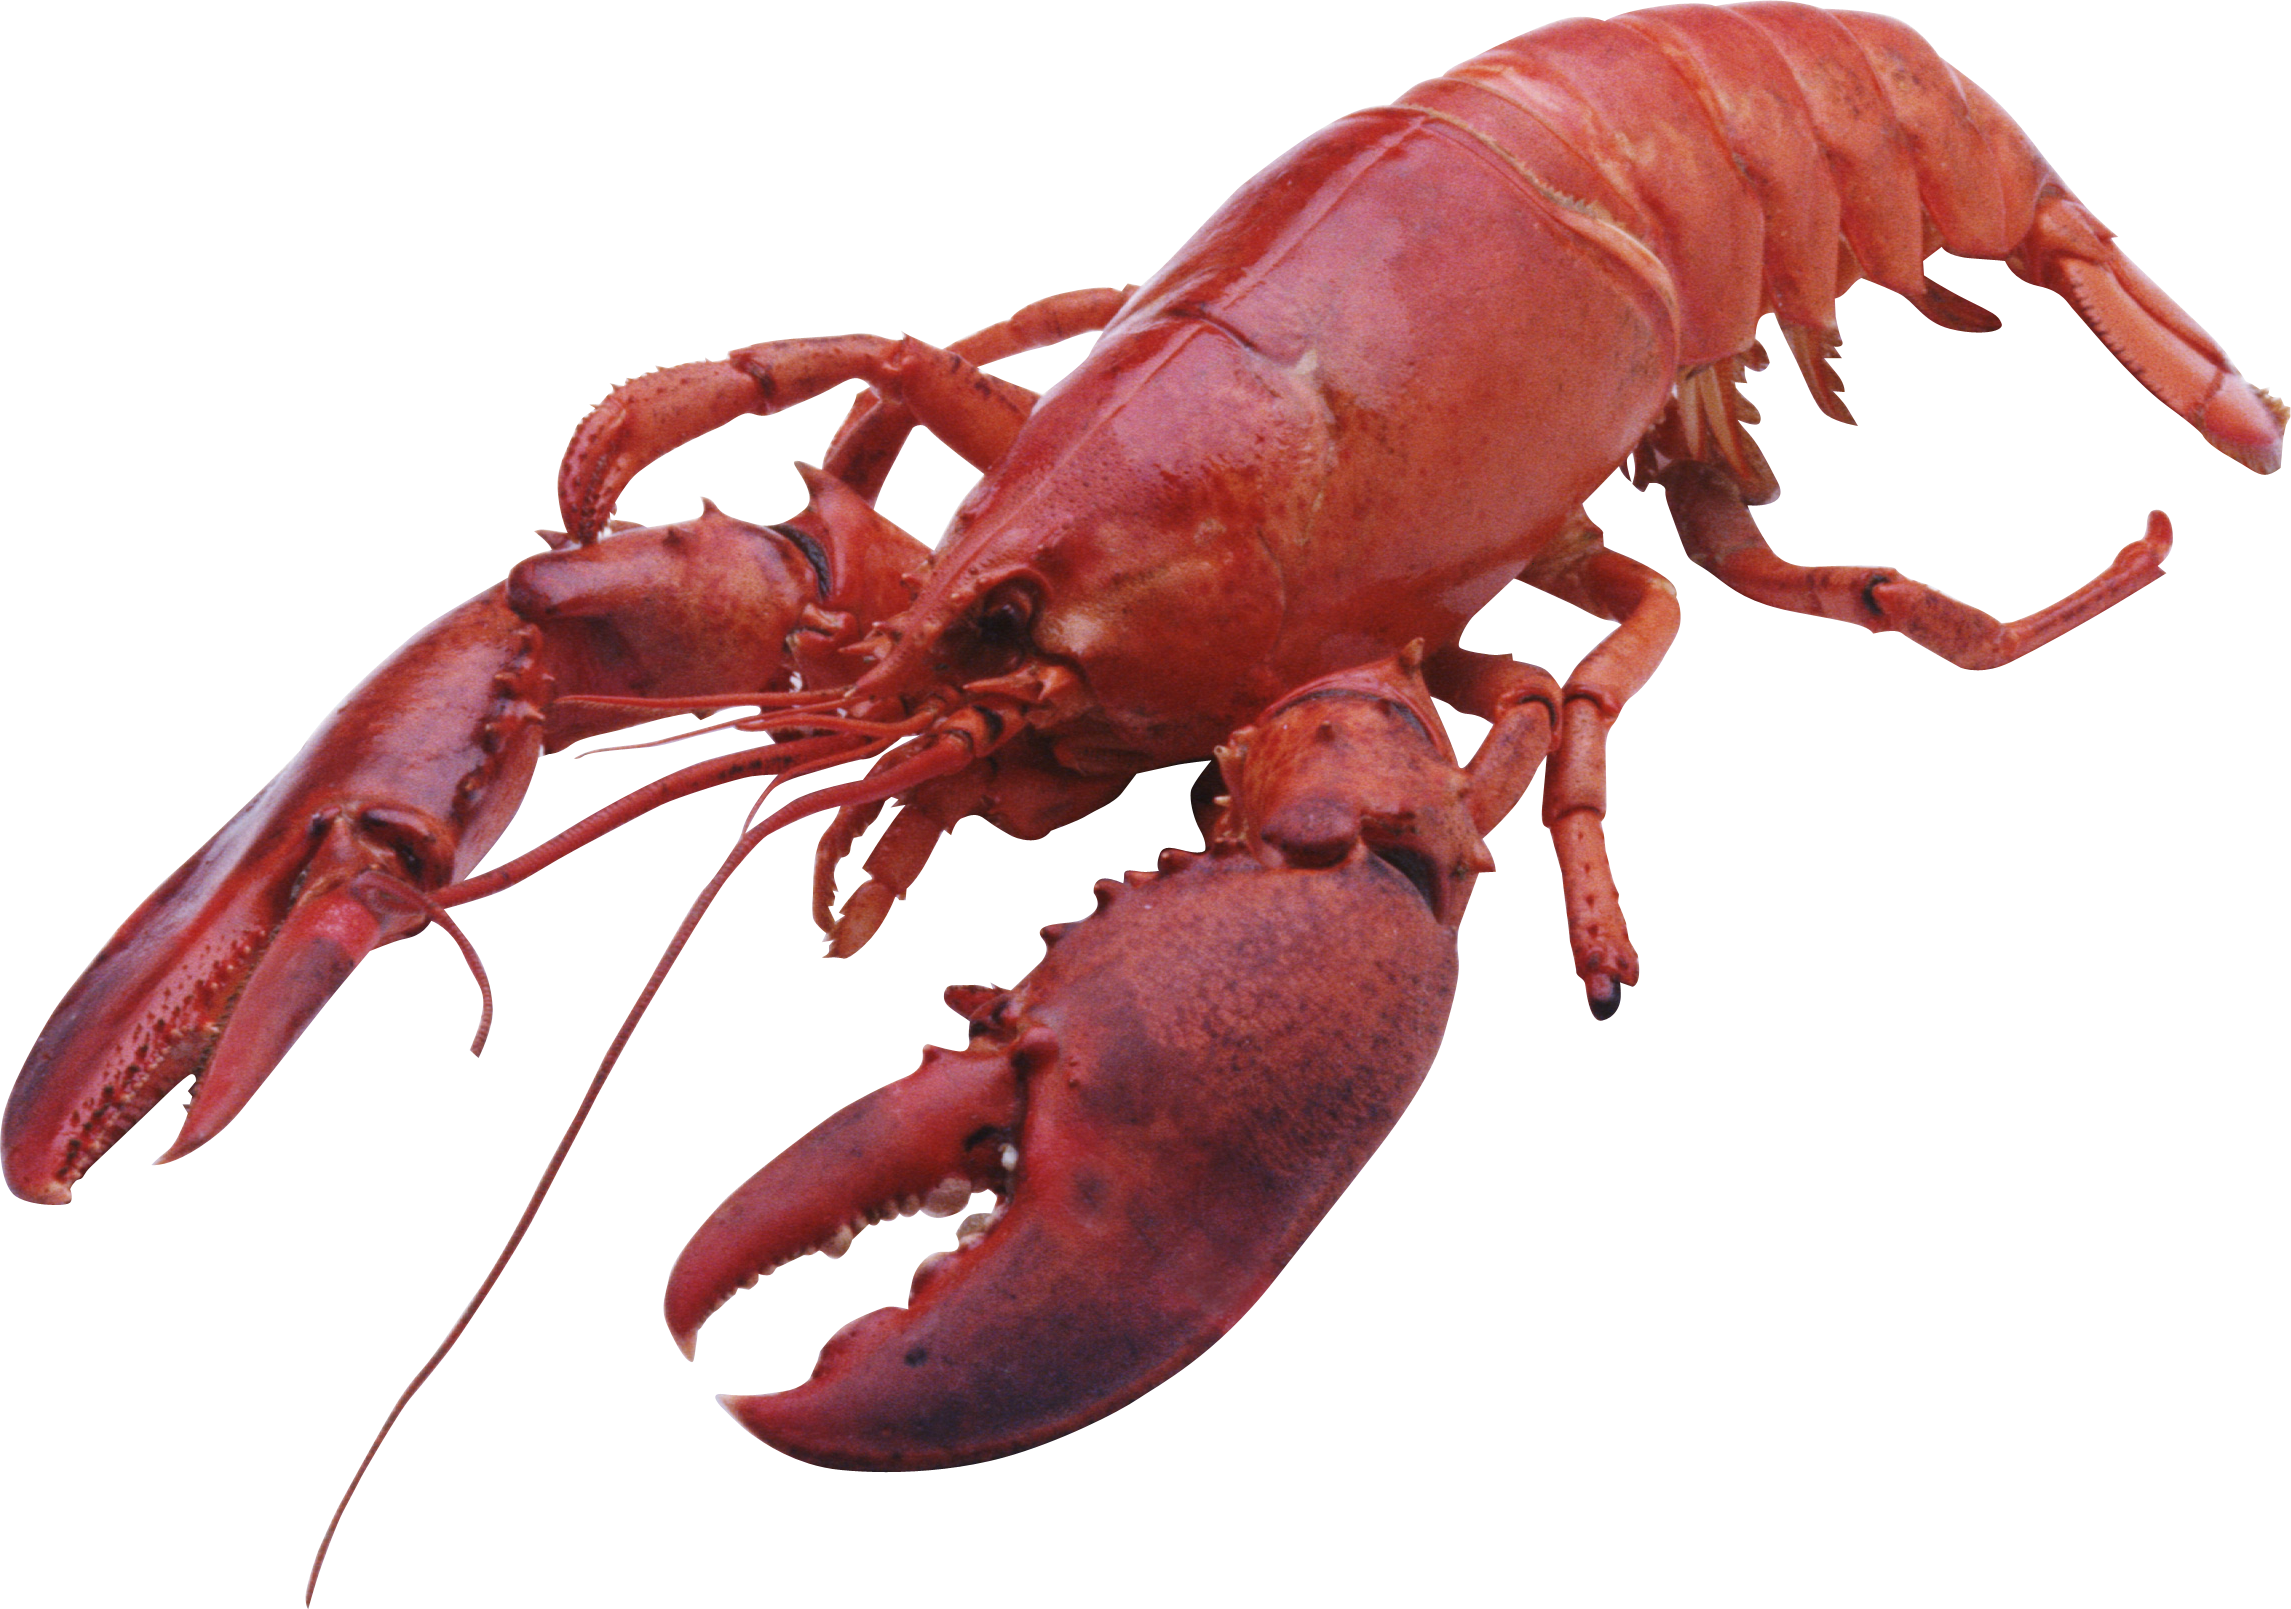 Lobster Png - KibrisPDR